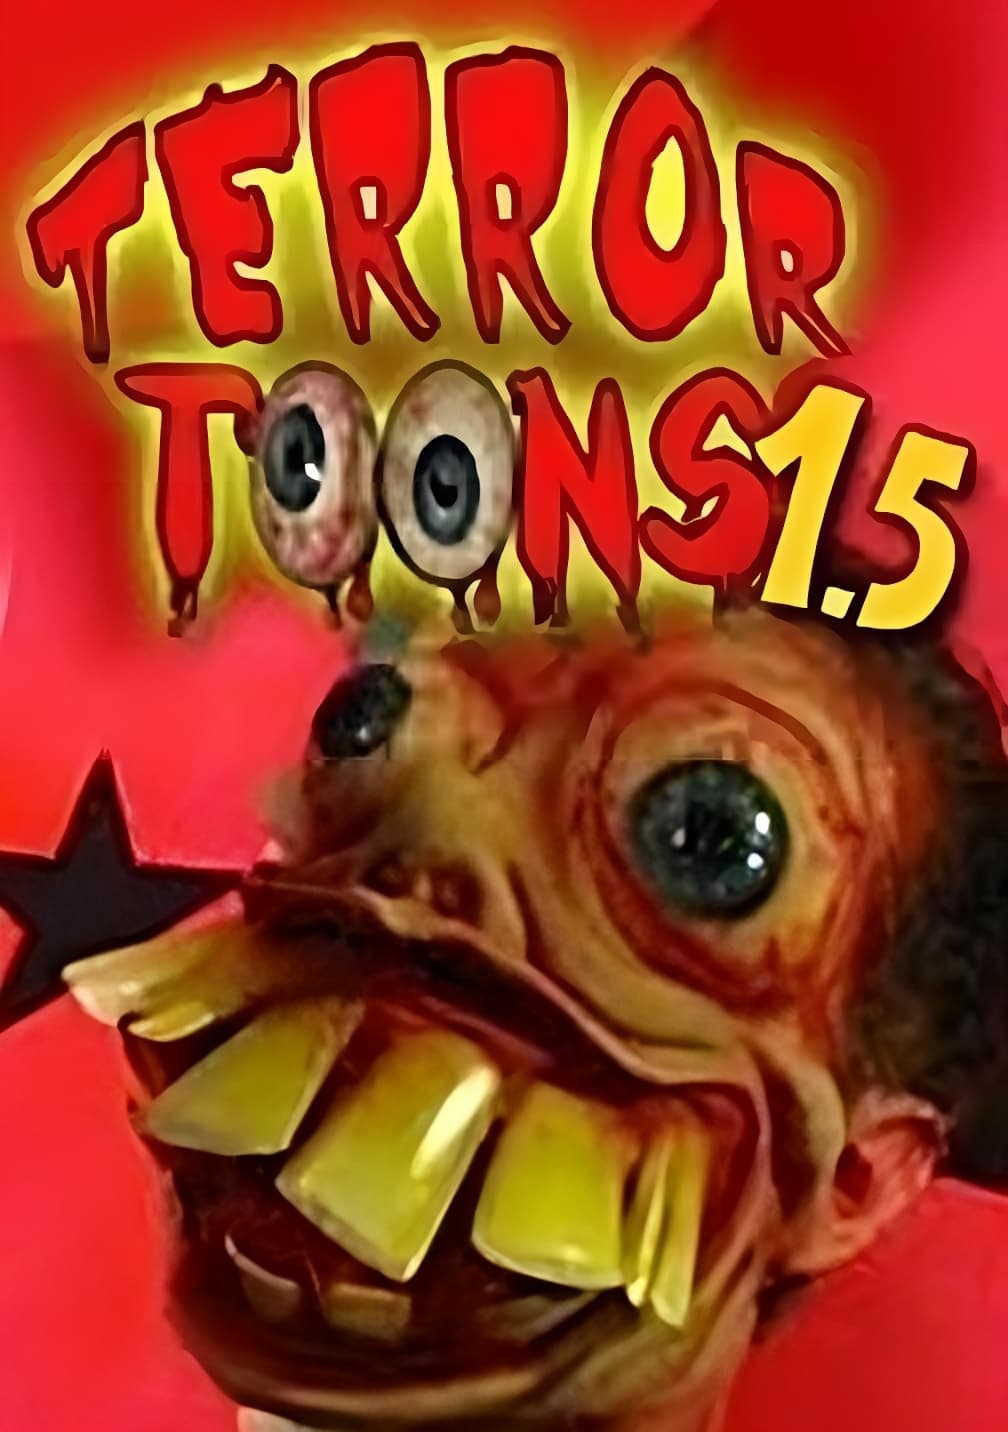 Terror Toons 1.5